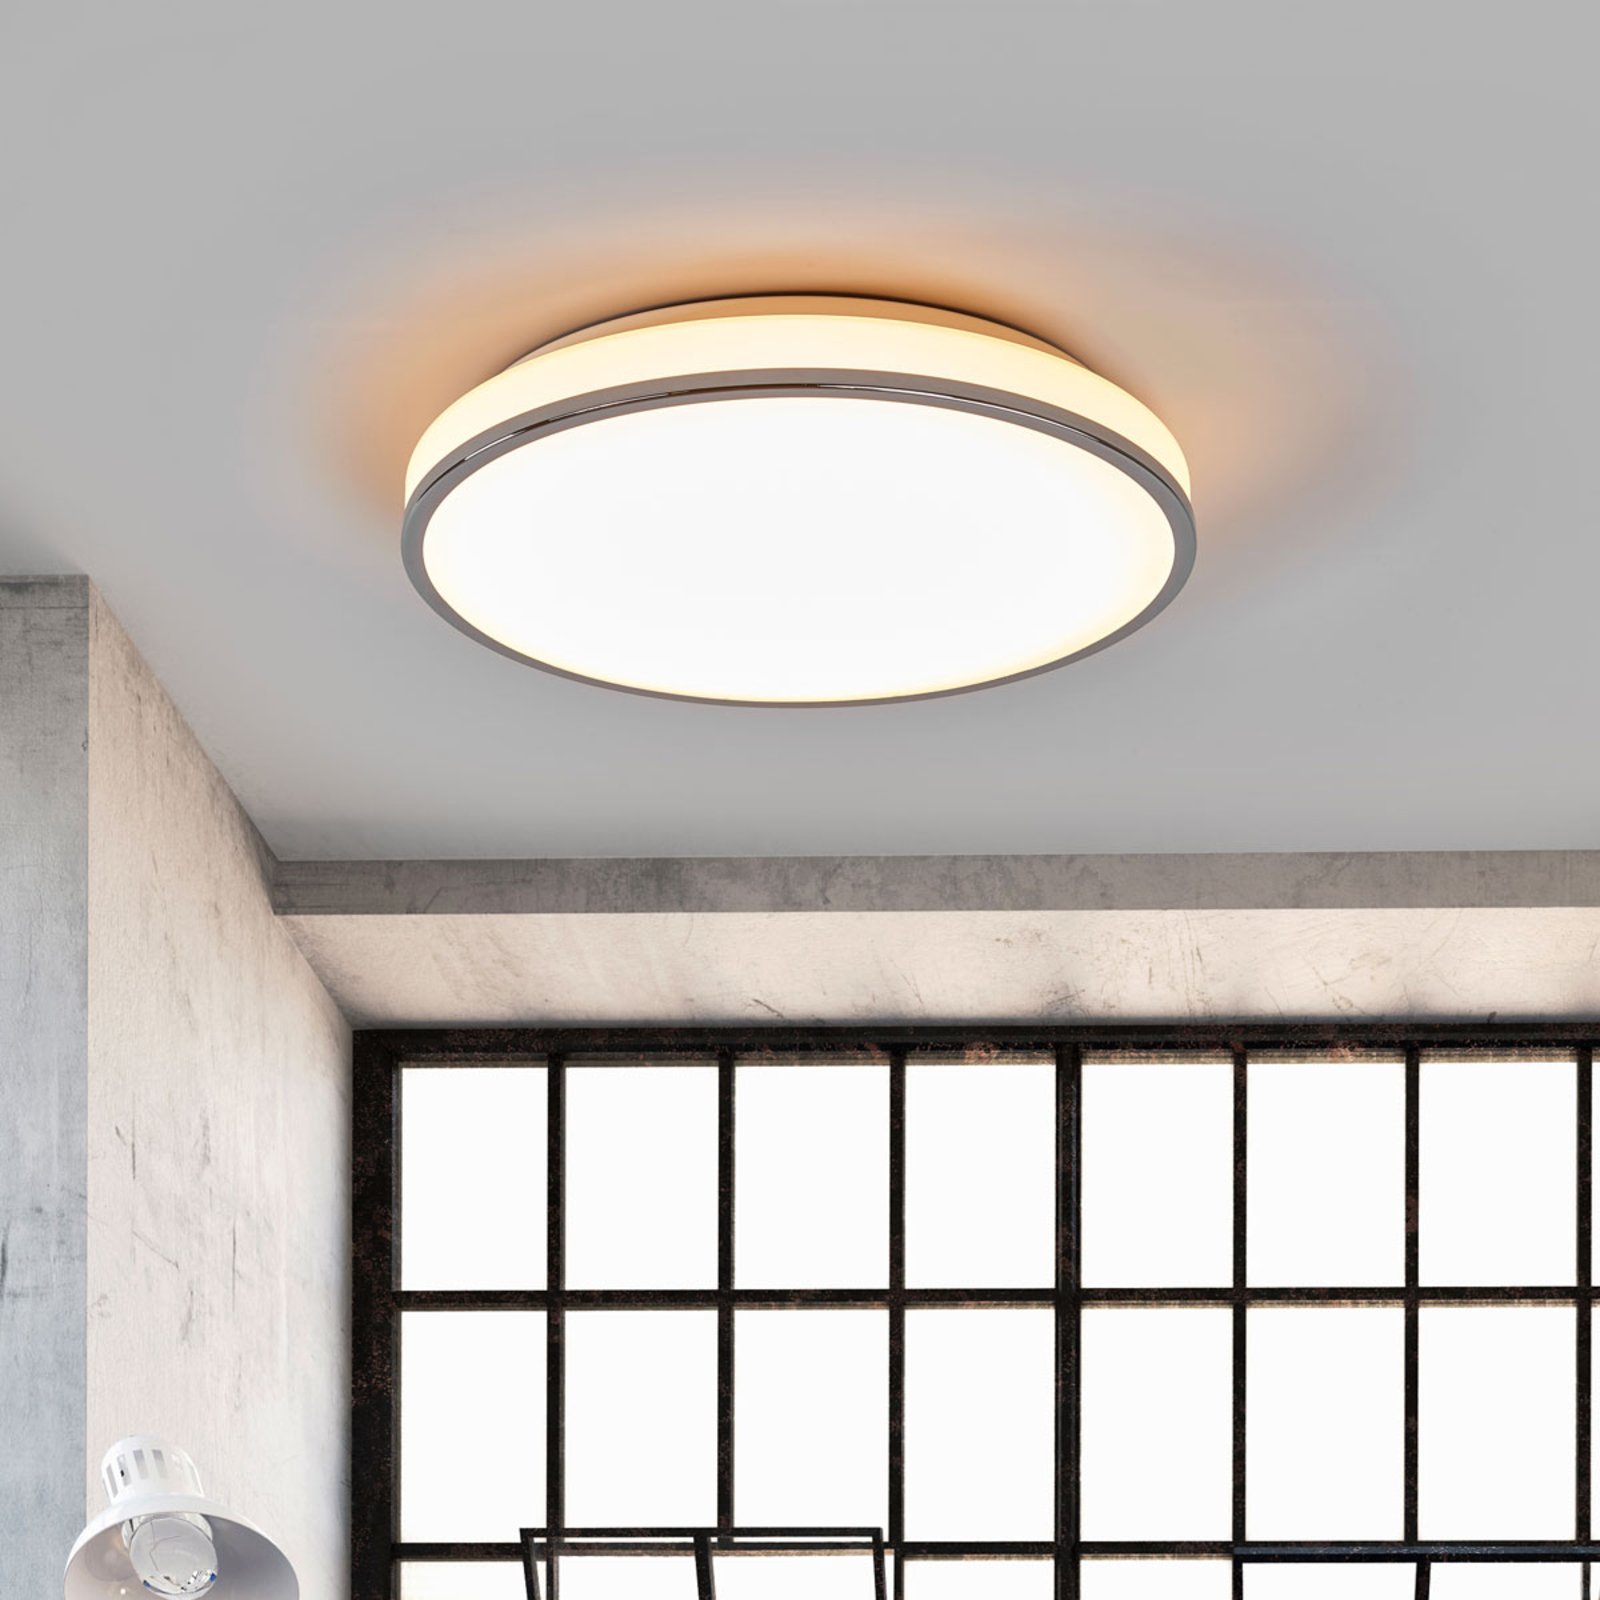 Lampa łazienkowa LED Lyss, duża moc światła